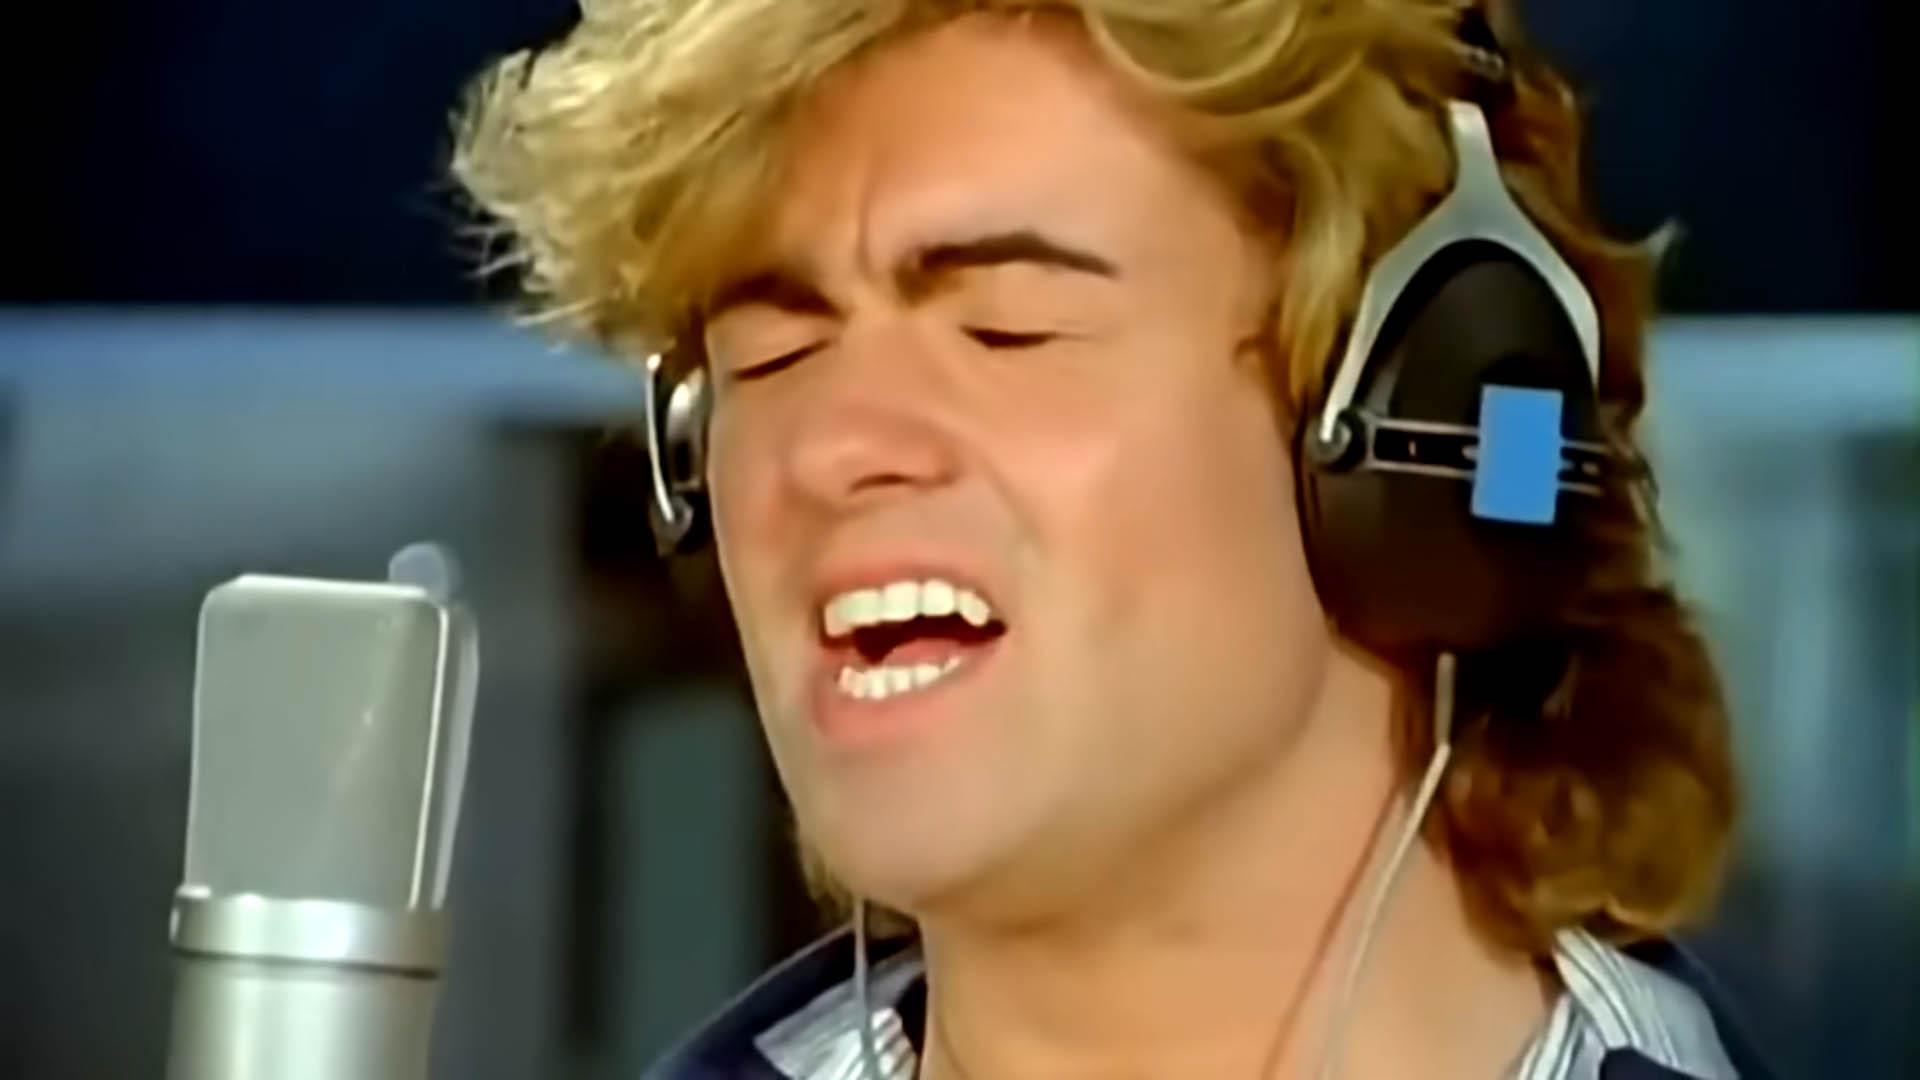 Una fermo immagine che raffigura George Michael dal videoclip della canzone originale del 1984. Un doveroso tributo a un artista che ci ha lasciato.